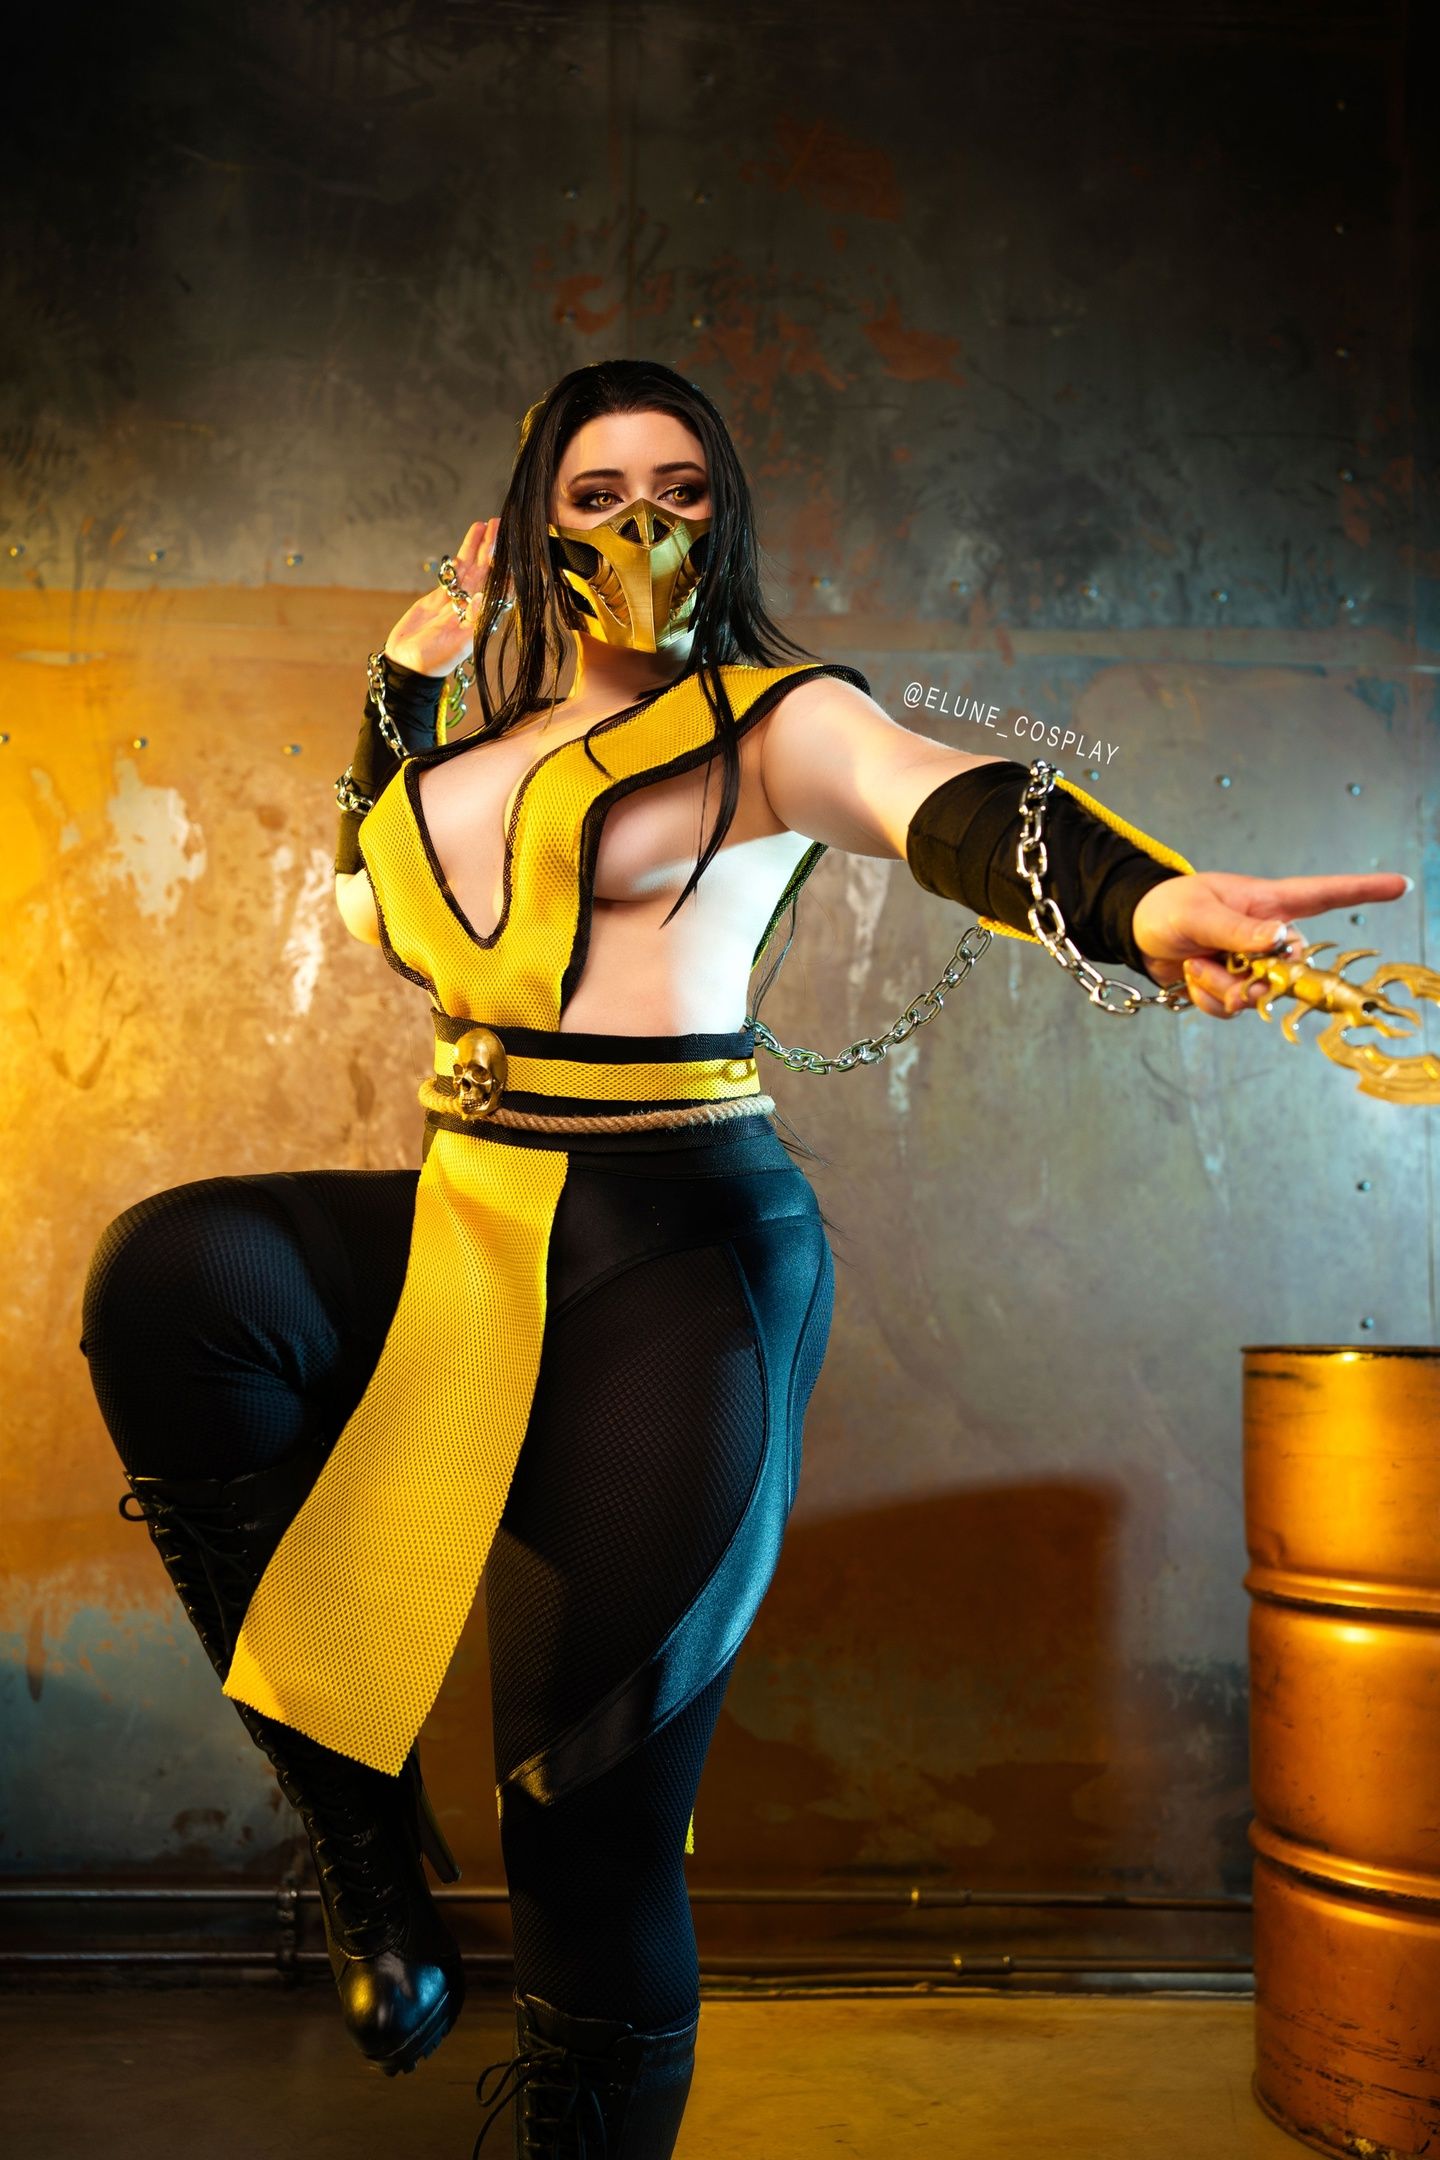 Женская версия Скорпиона из Mortal Kombat. Косплей: Elune_cosplay. Источник: vk.com/elune_cosplay